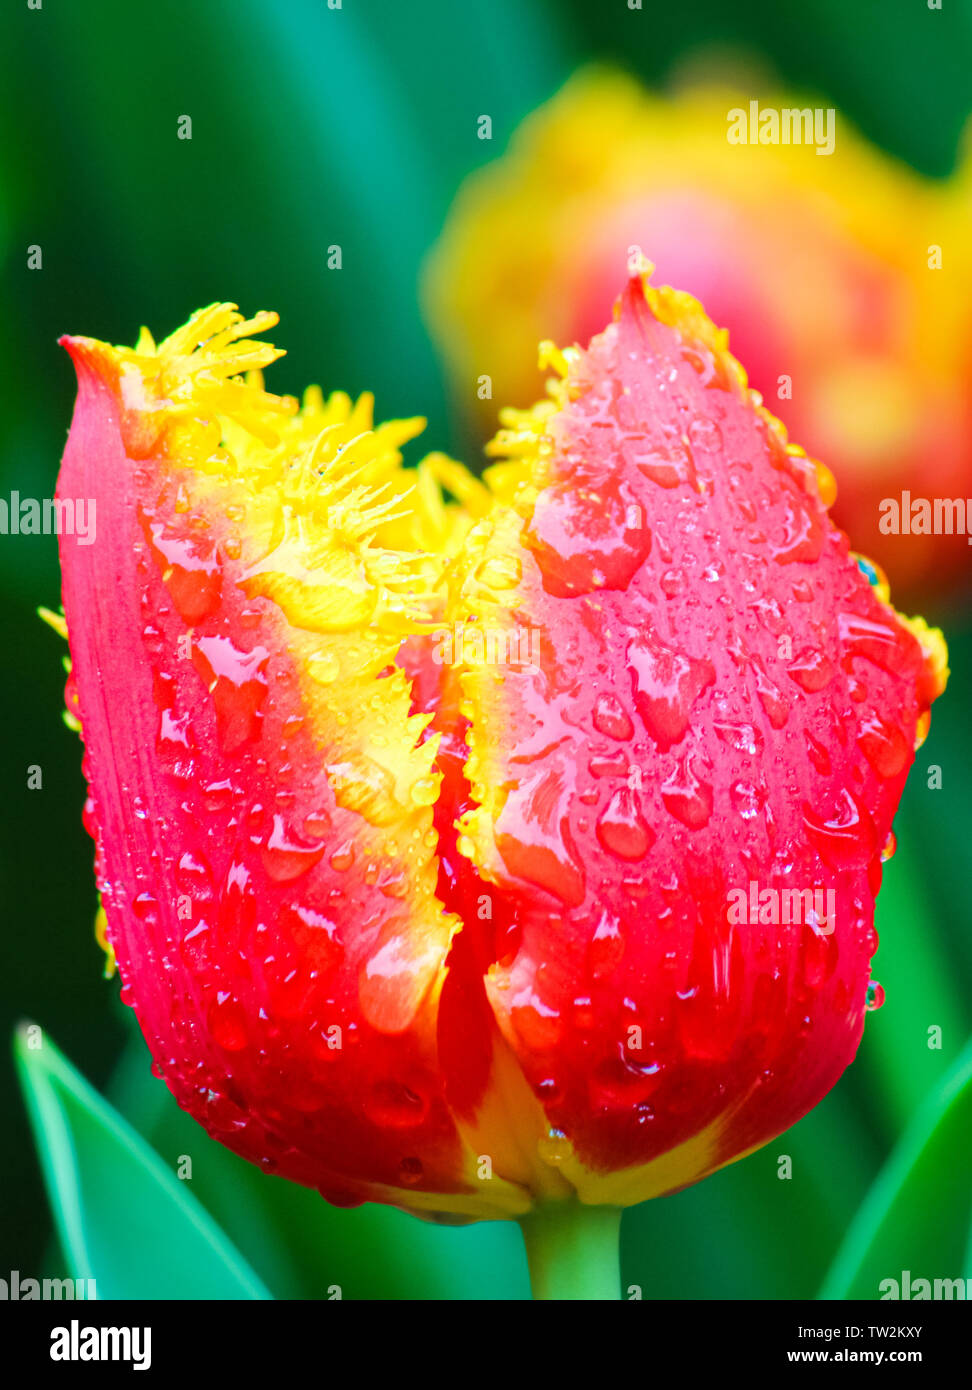 Magnifique détail de fleur tulipe jaune rouge avec des gouttes de pluie sur les pétales. Floue fond vert. Les fleurs typiques des Pays-Bas. Fleurs Macro, macro nature. Nature extraordinaire. Banque D'Images